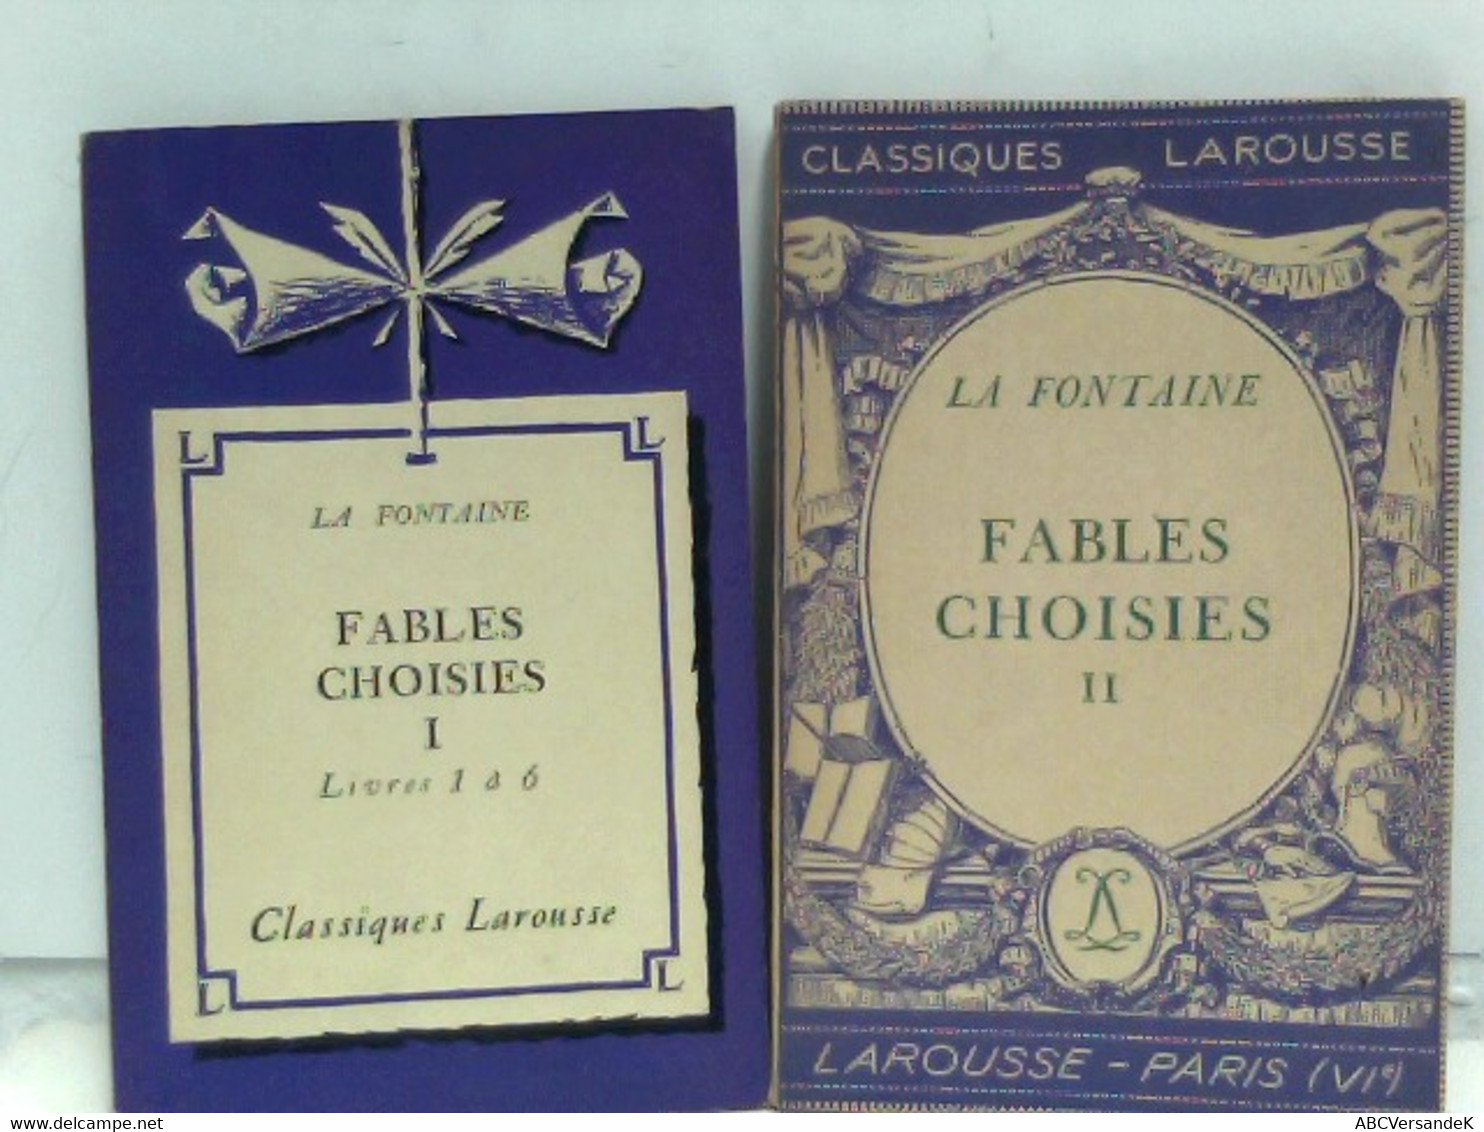 Fables Choisies - Bd. I: Livres 1 à 6, Bd. II: Fables Choisies - Deutschsprachige Autoren